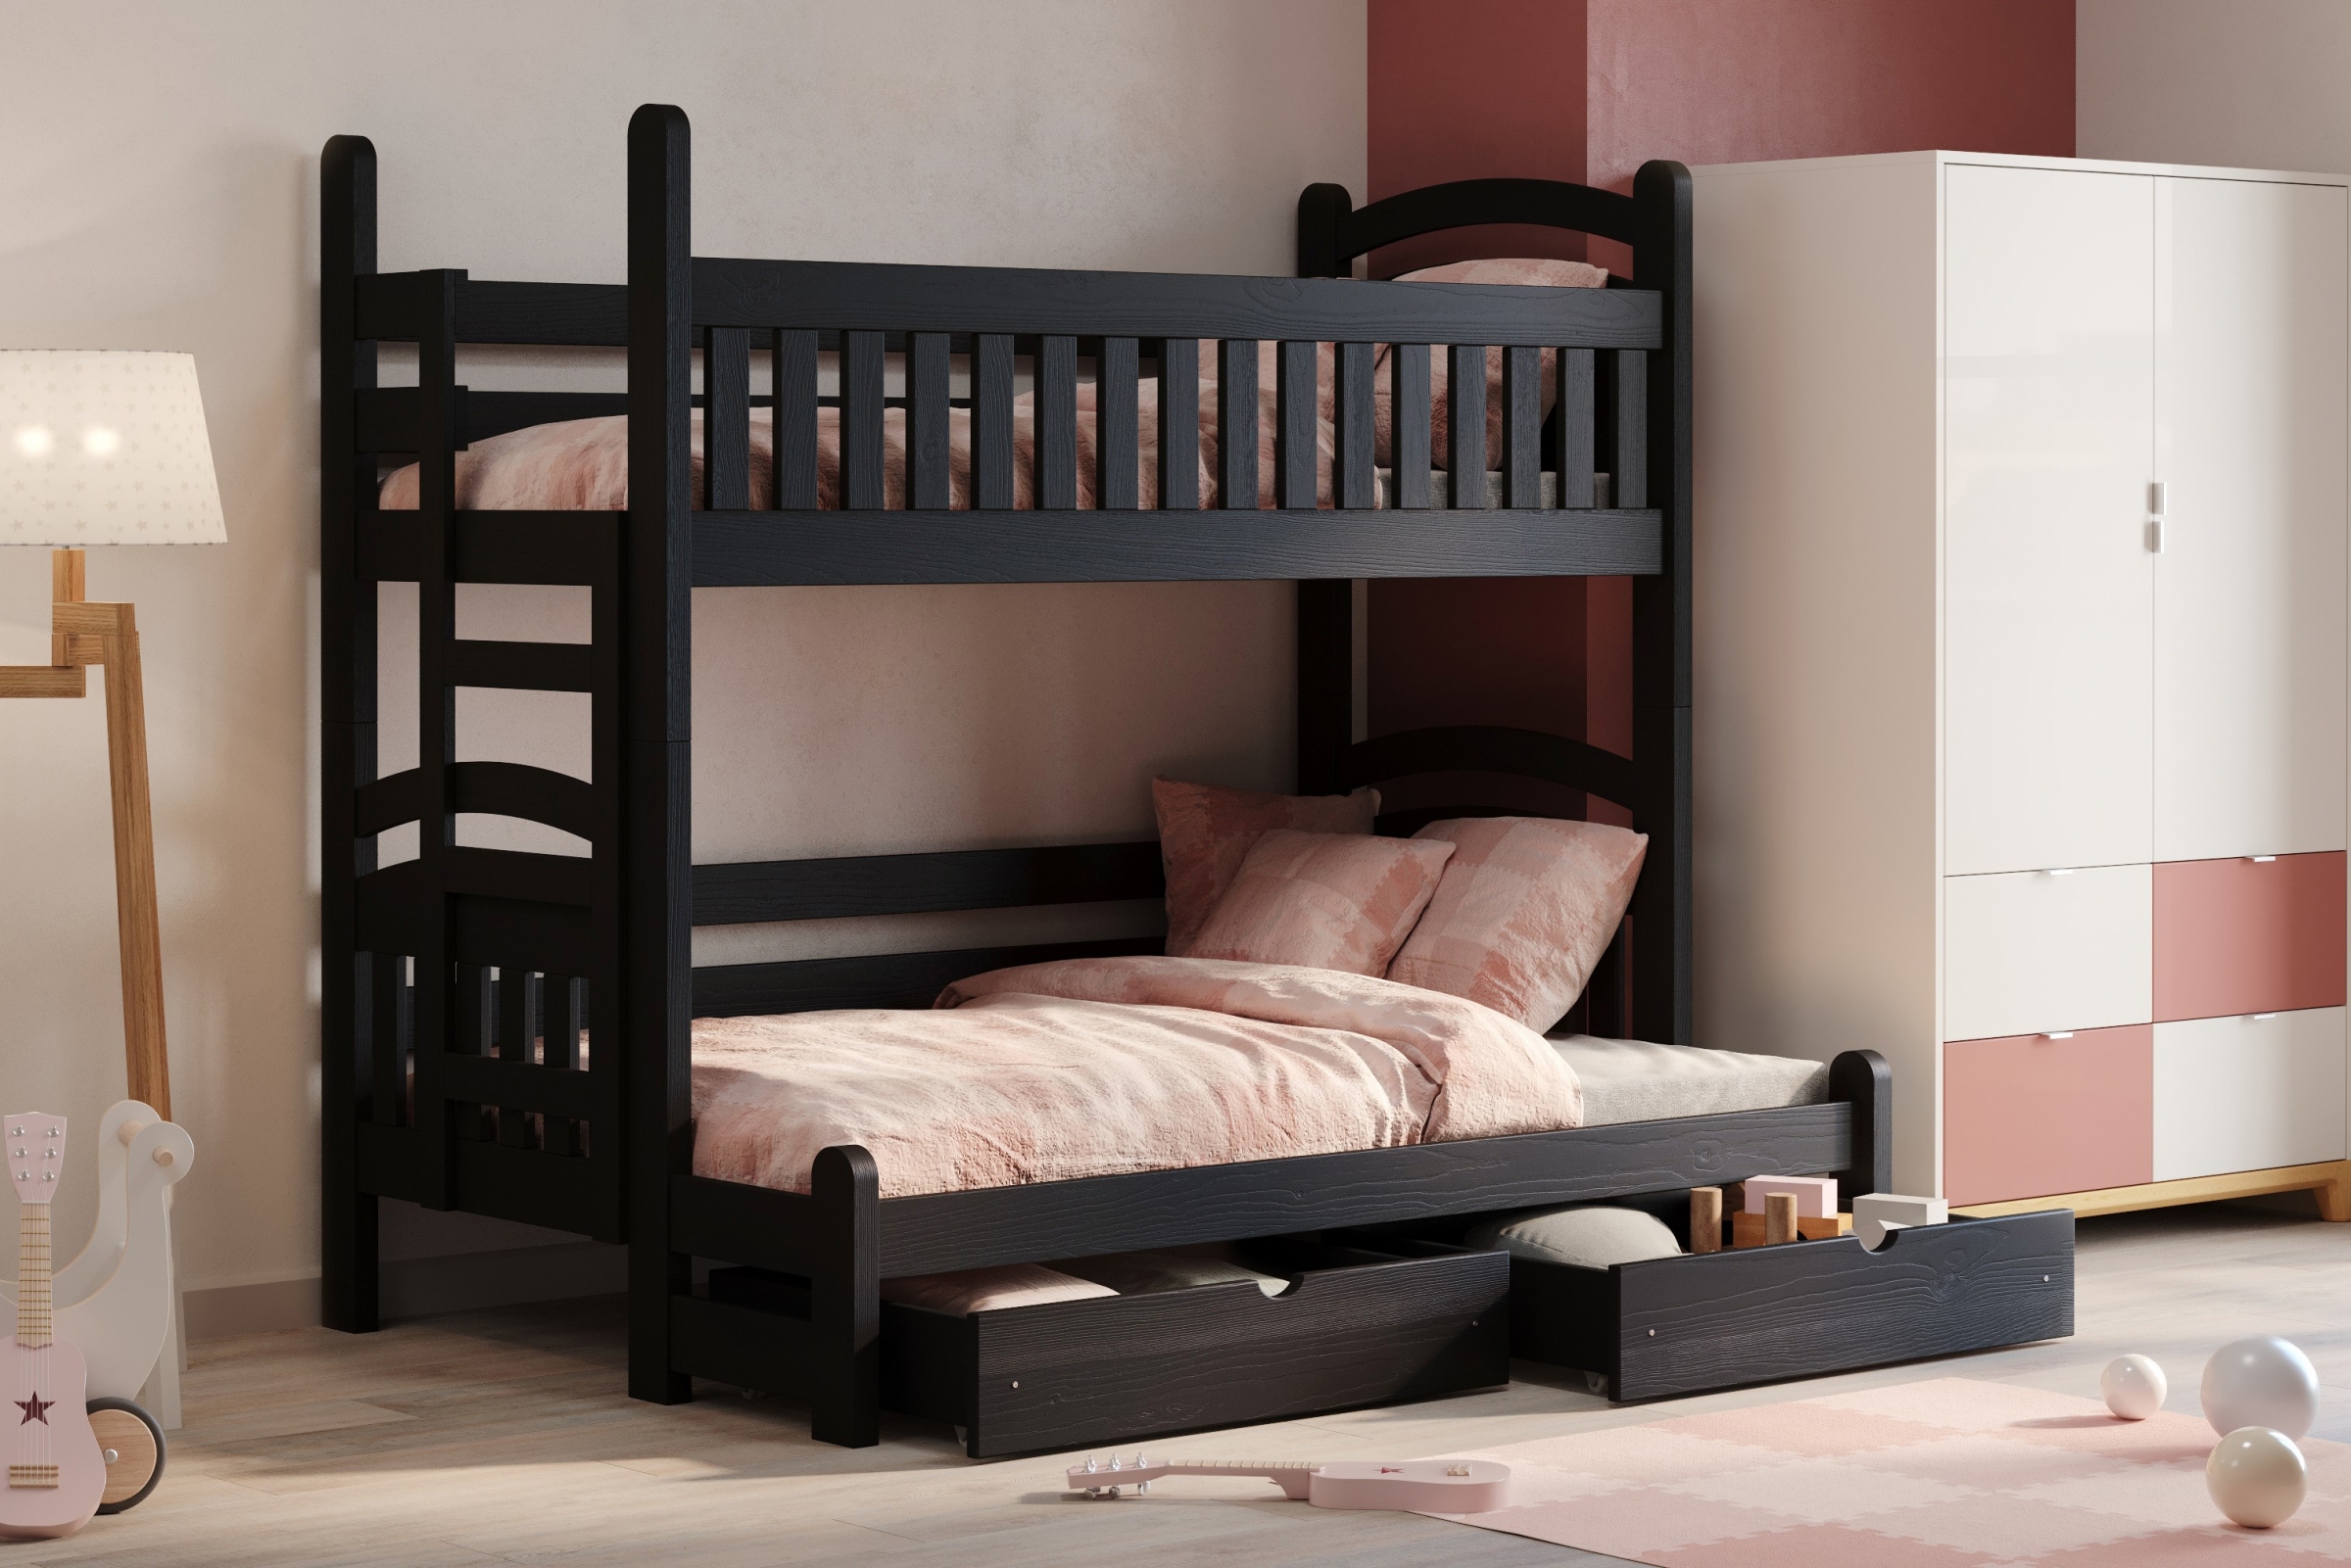 Amely Maxi emeletes ágy, jobb oldal - fekete, 80x200/140x200 Emeletes ágy Amely Maxi prawostronne - fekete - aranzacja